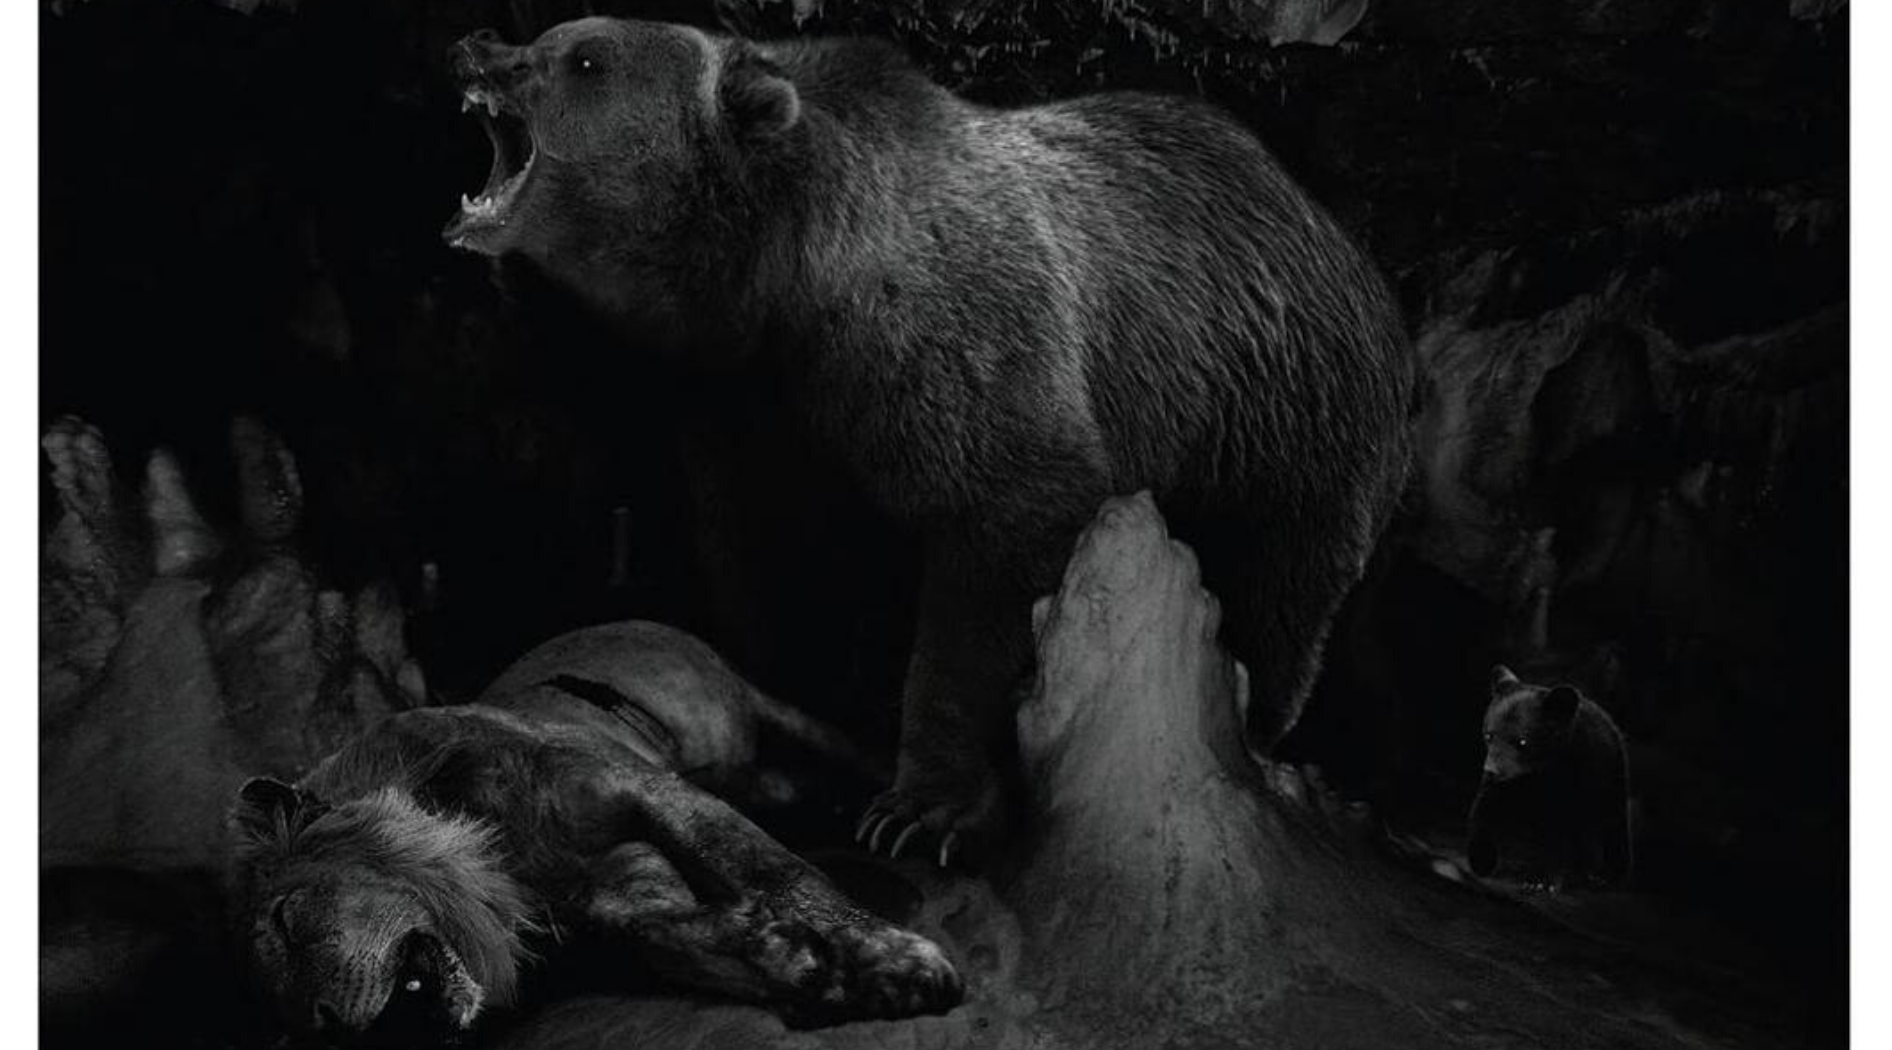 L'ours et le lion des cavernes - image en noir et blanc.